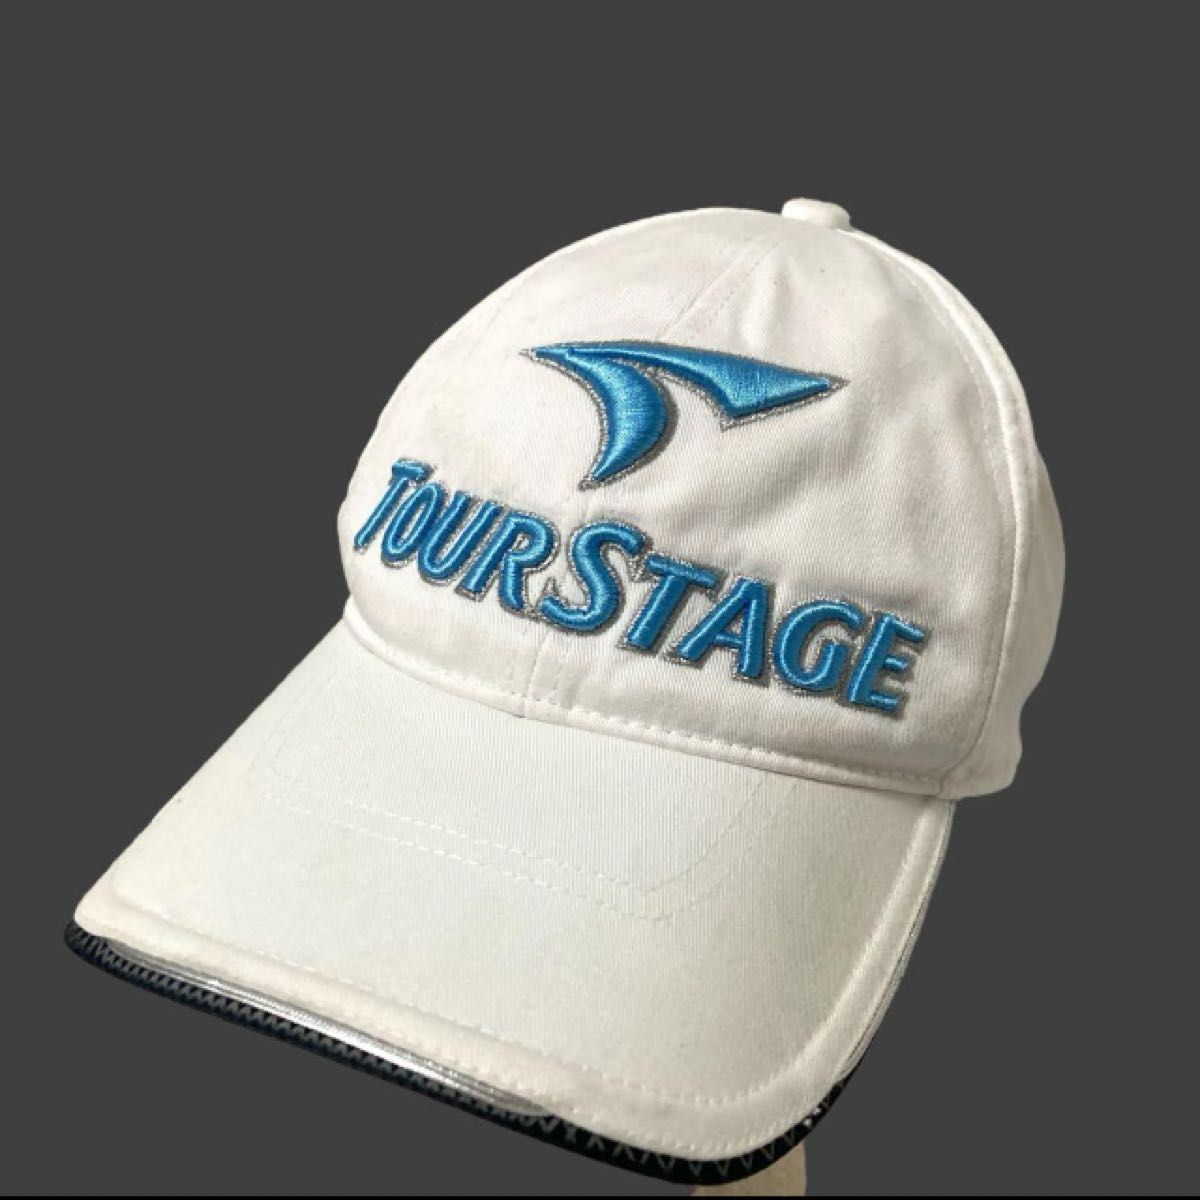 TOURSTAGE ツアーステージ ゴルフ キャップ F 帽子 刺繍ロゴ ラメ ホワイト系